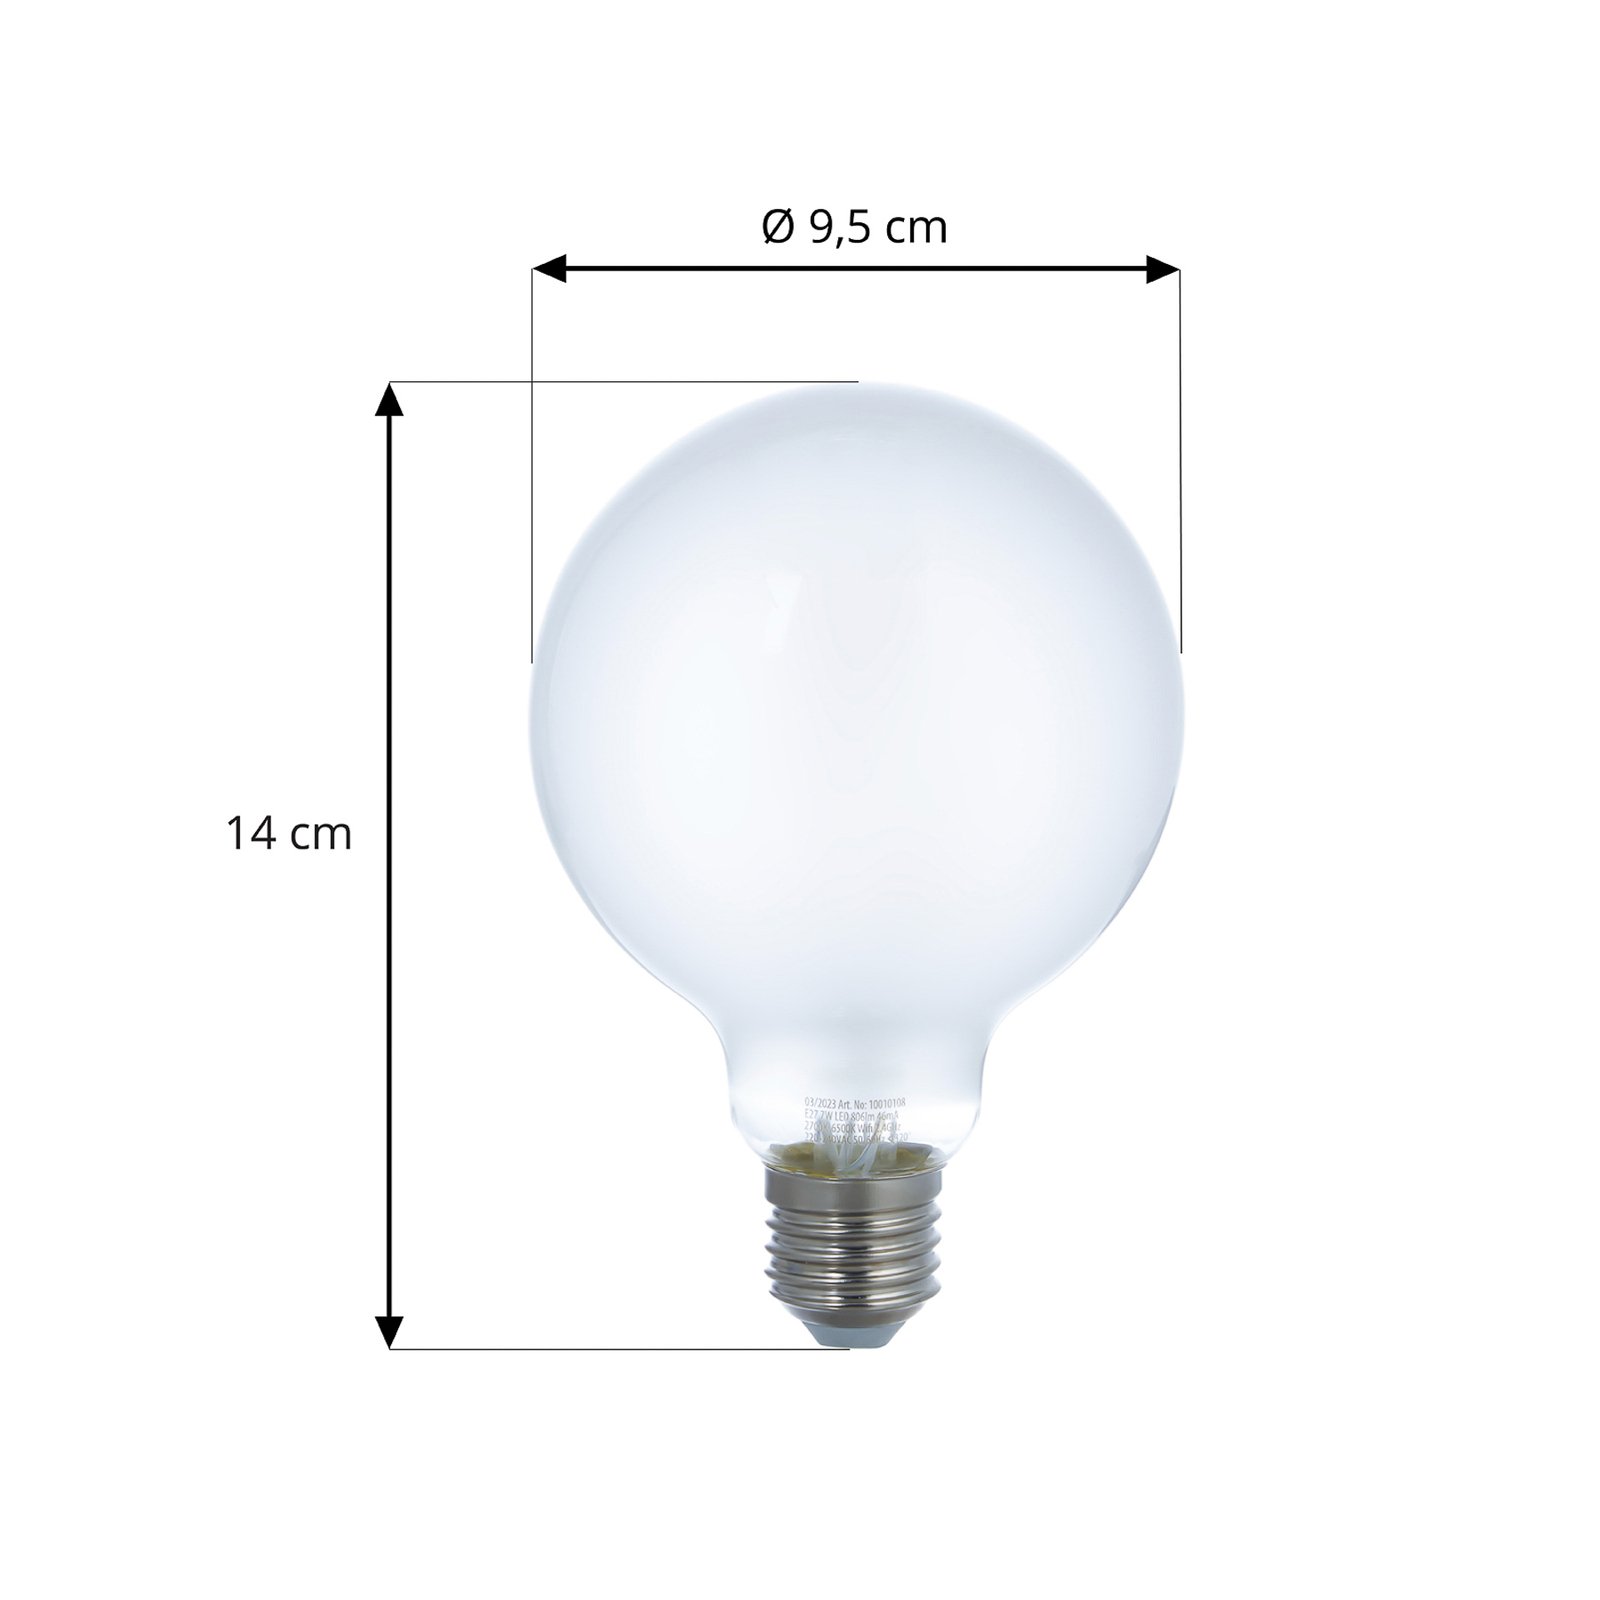 LUUMR Smart LED-lampuppsättning med 3 E27 G95 7W matt Tuya